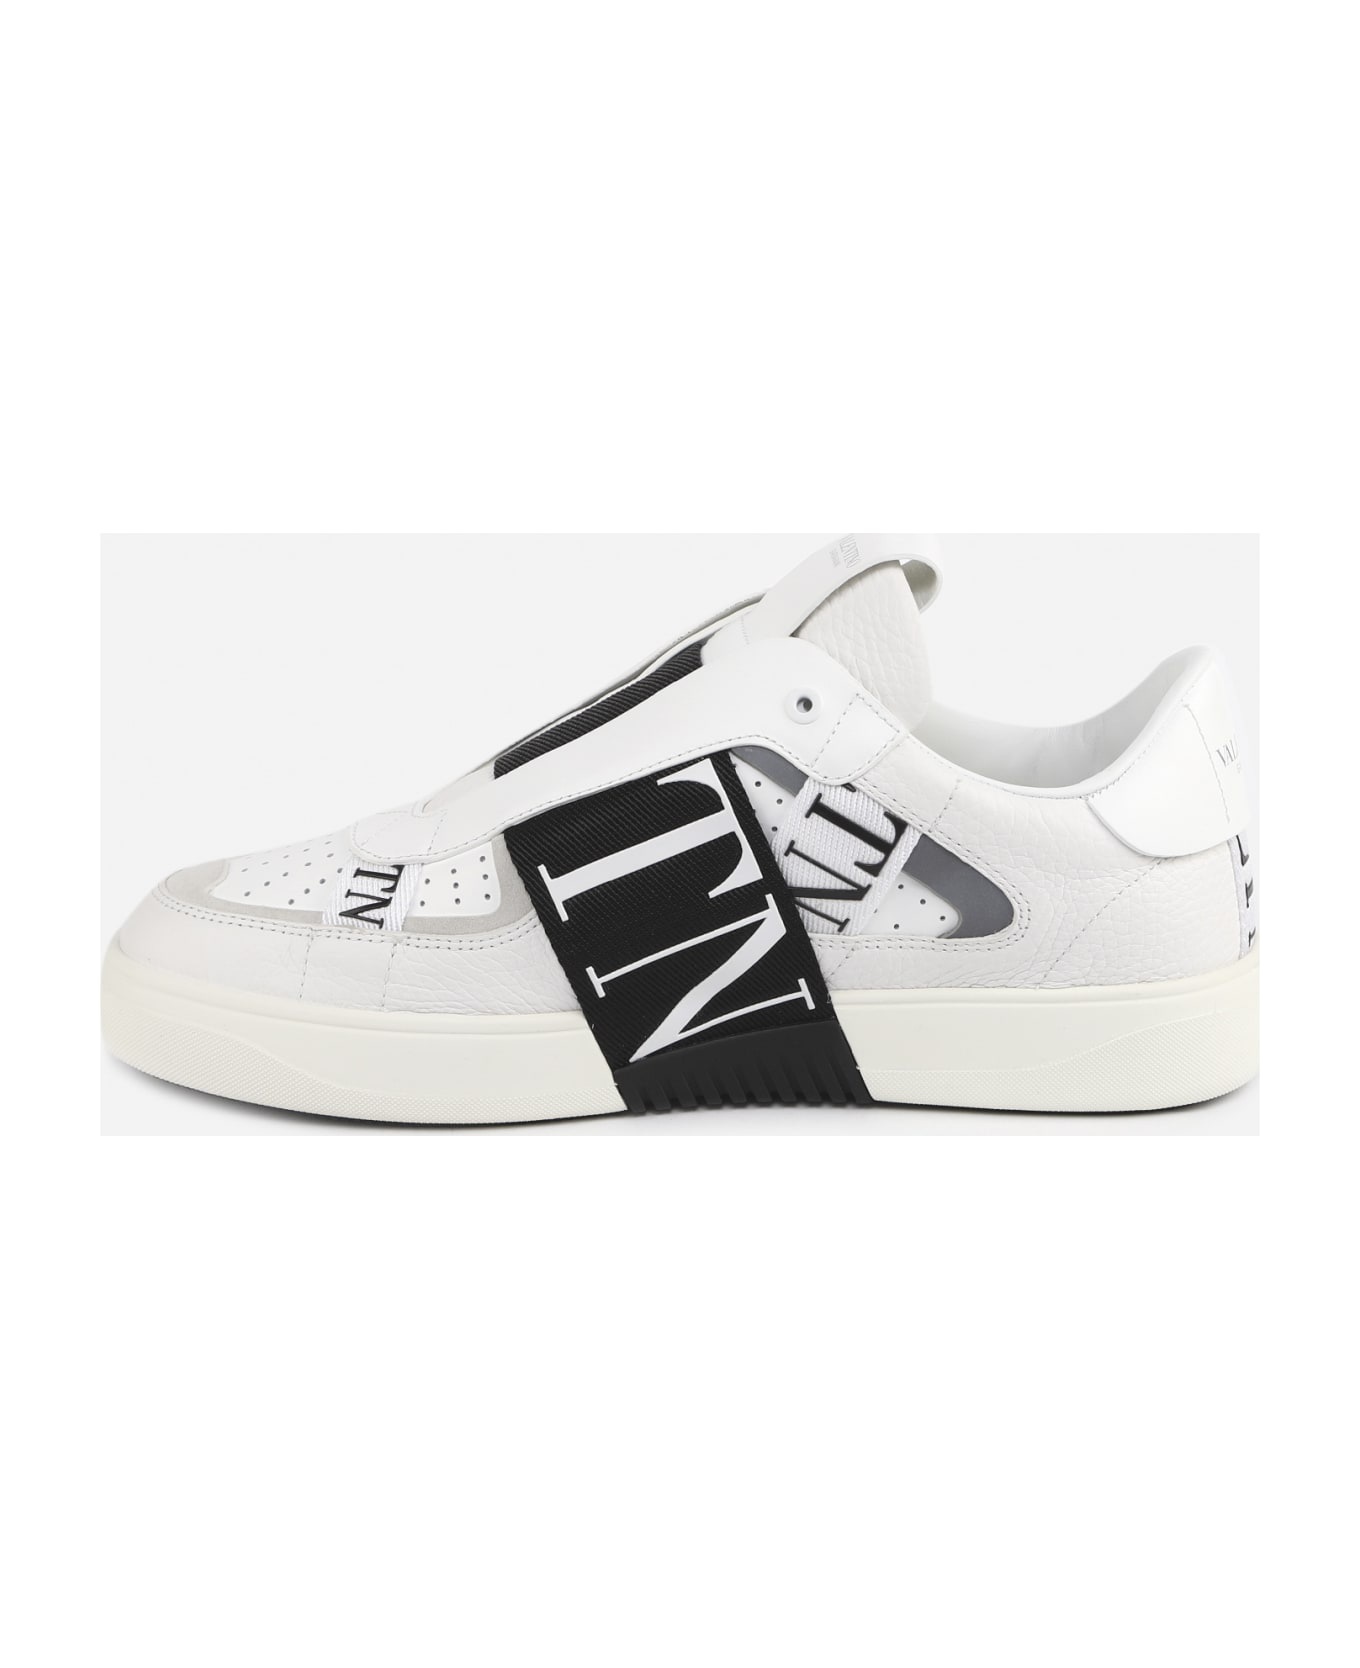 Vl7n Slip-on Sneakers In Leather - 4